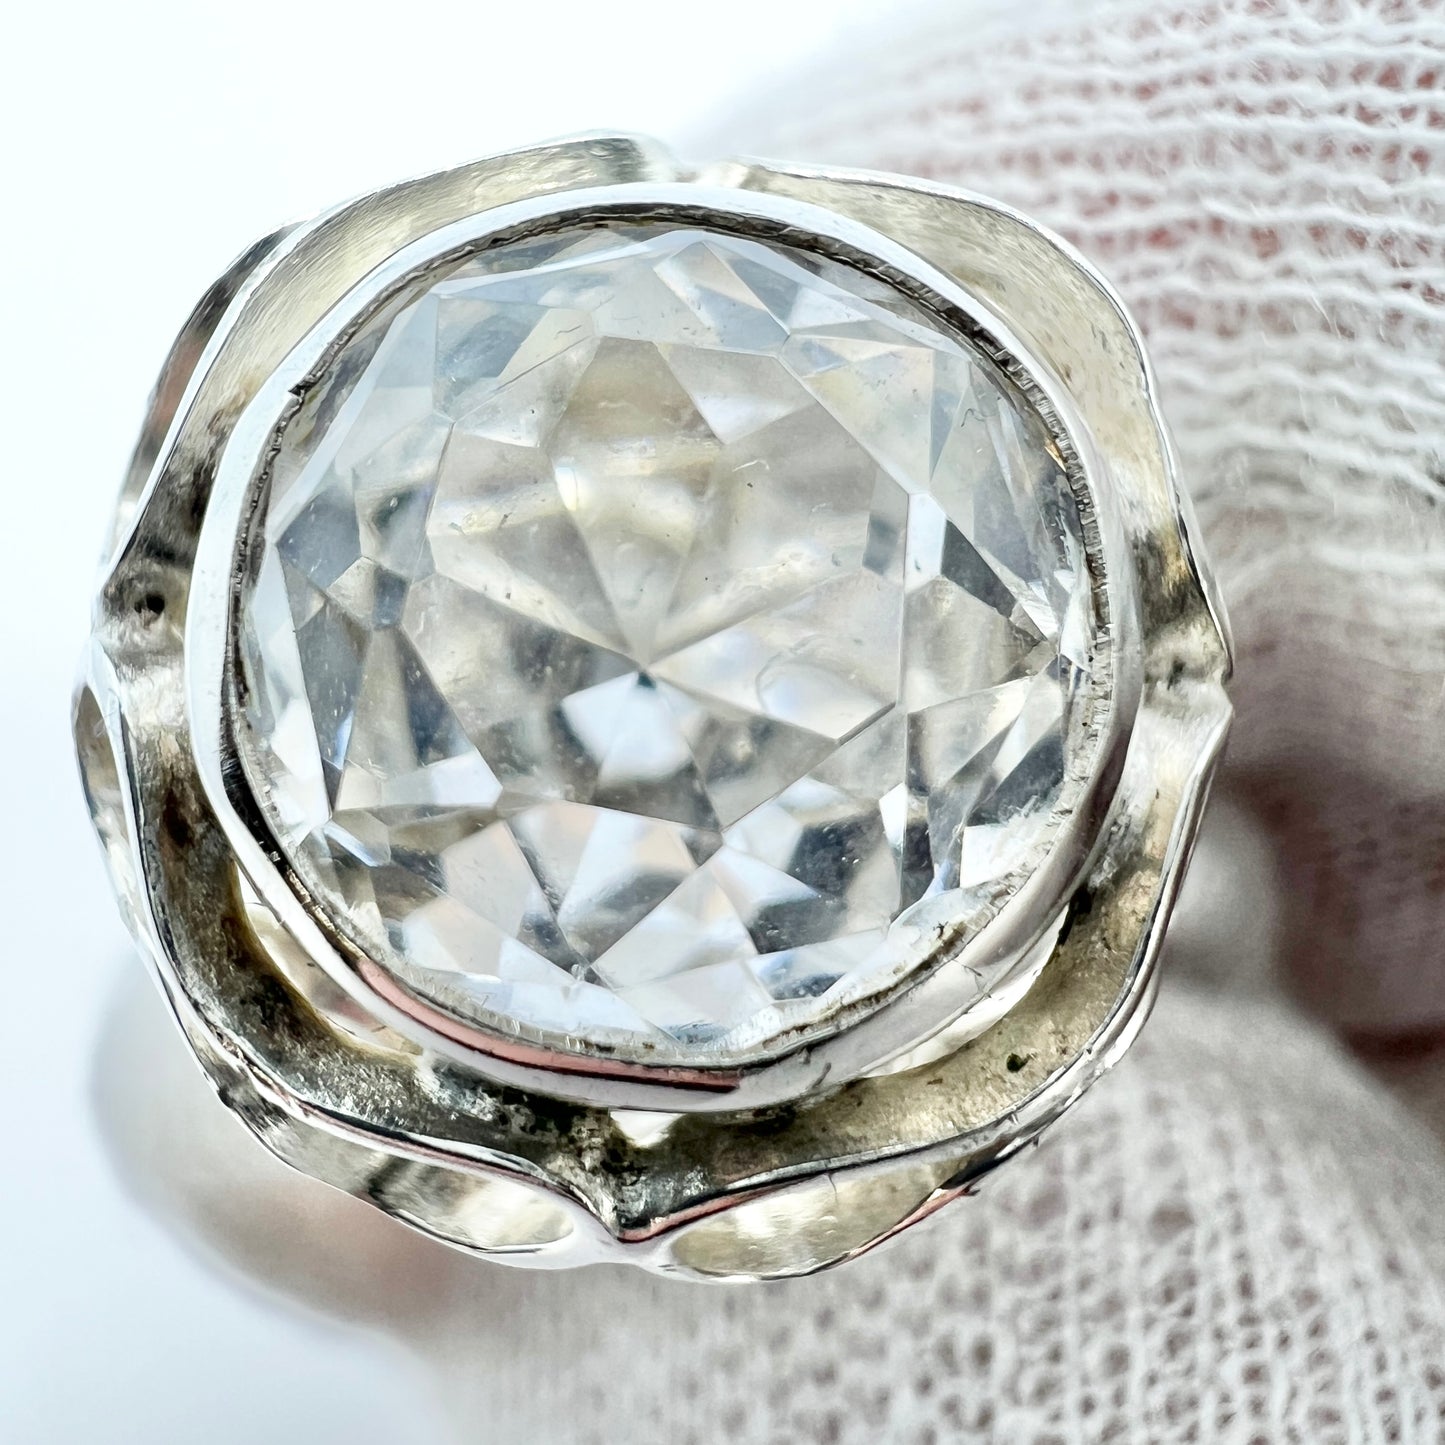 Sweden 1960-70s. Vintage Solid Silver Rock Crystal Ring.